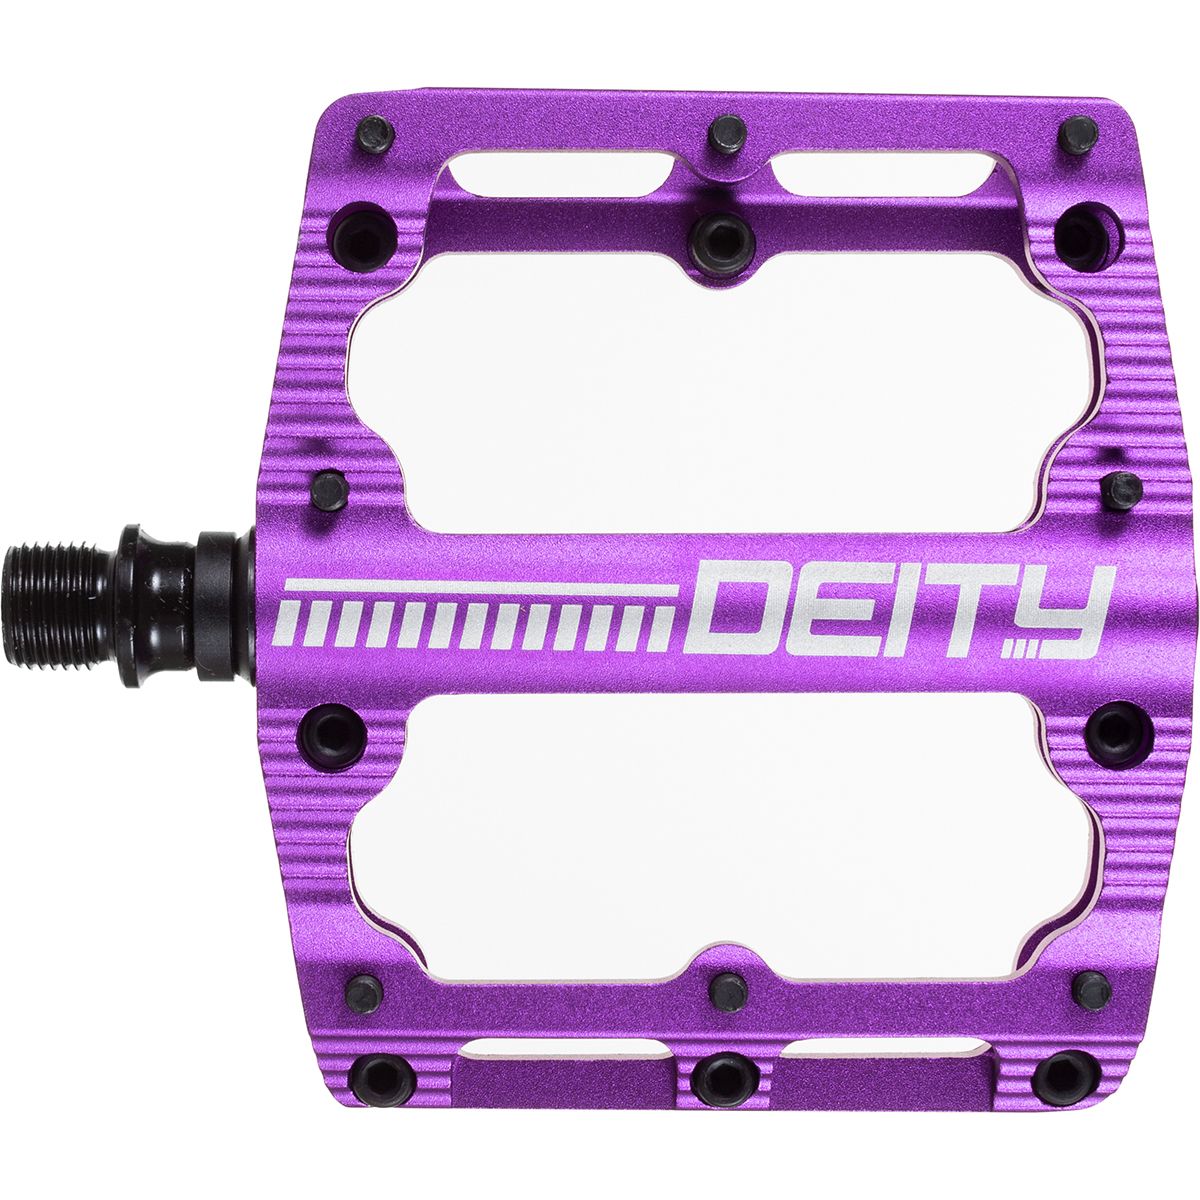 Deity Components Black Kat Pedals Purple, One Size